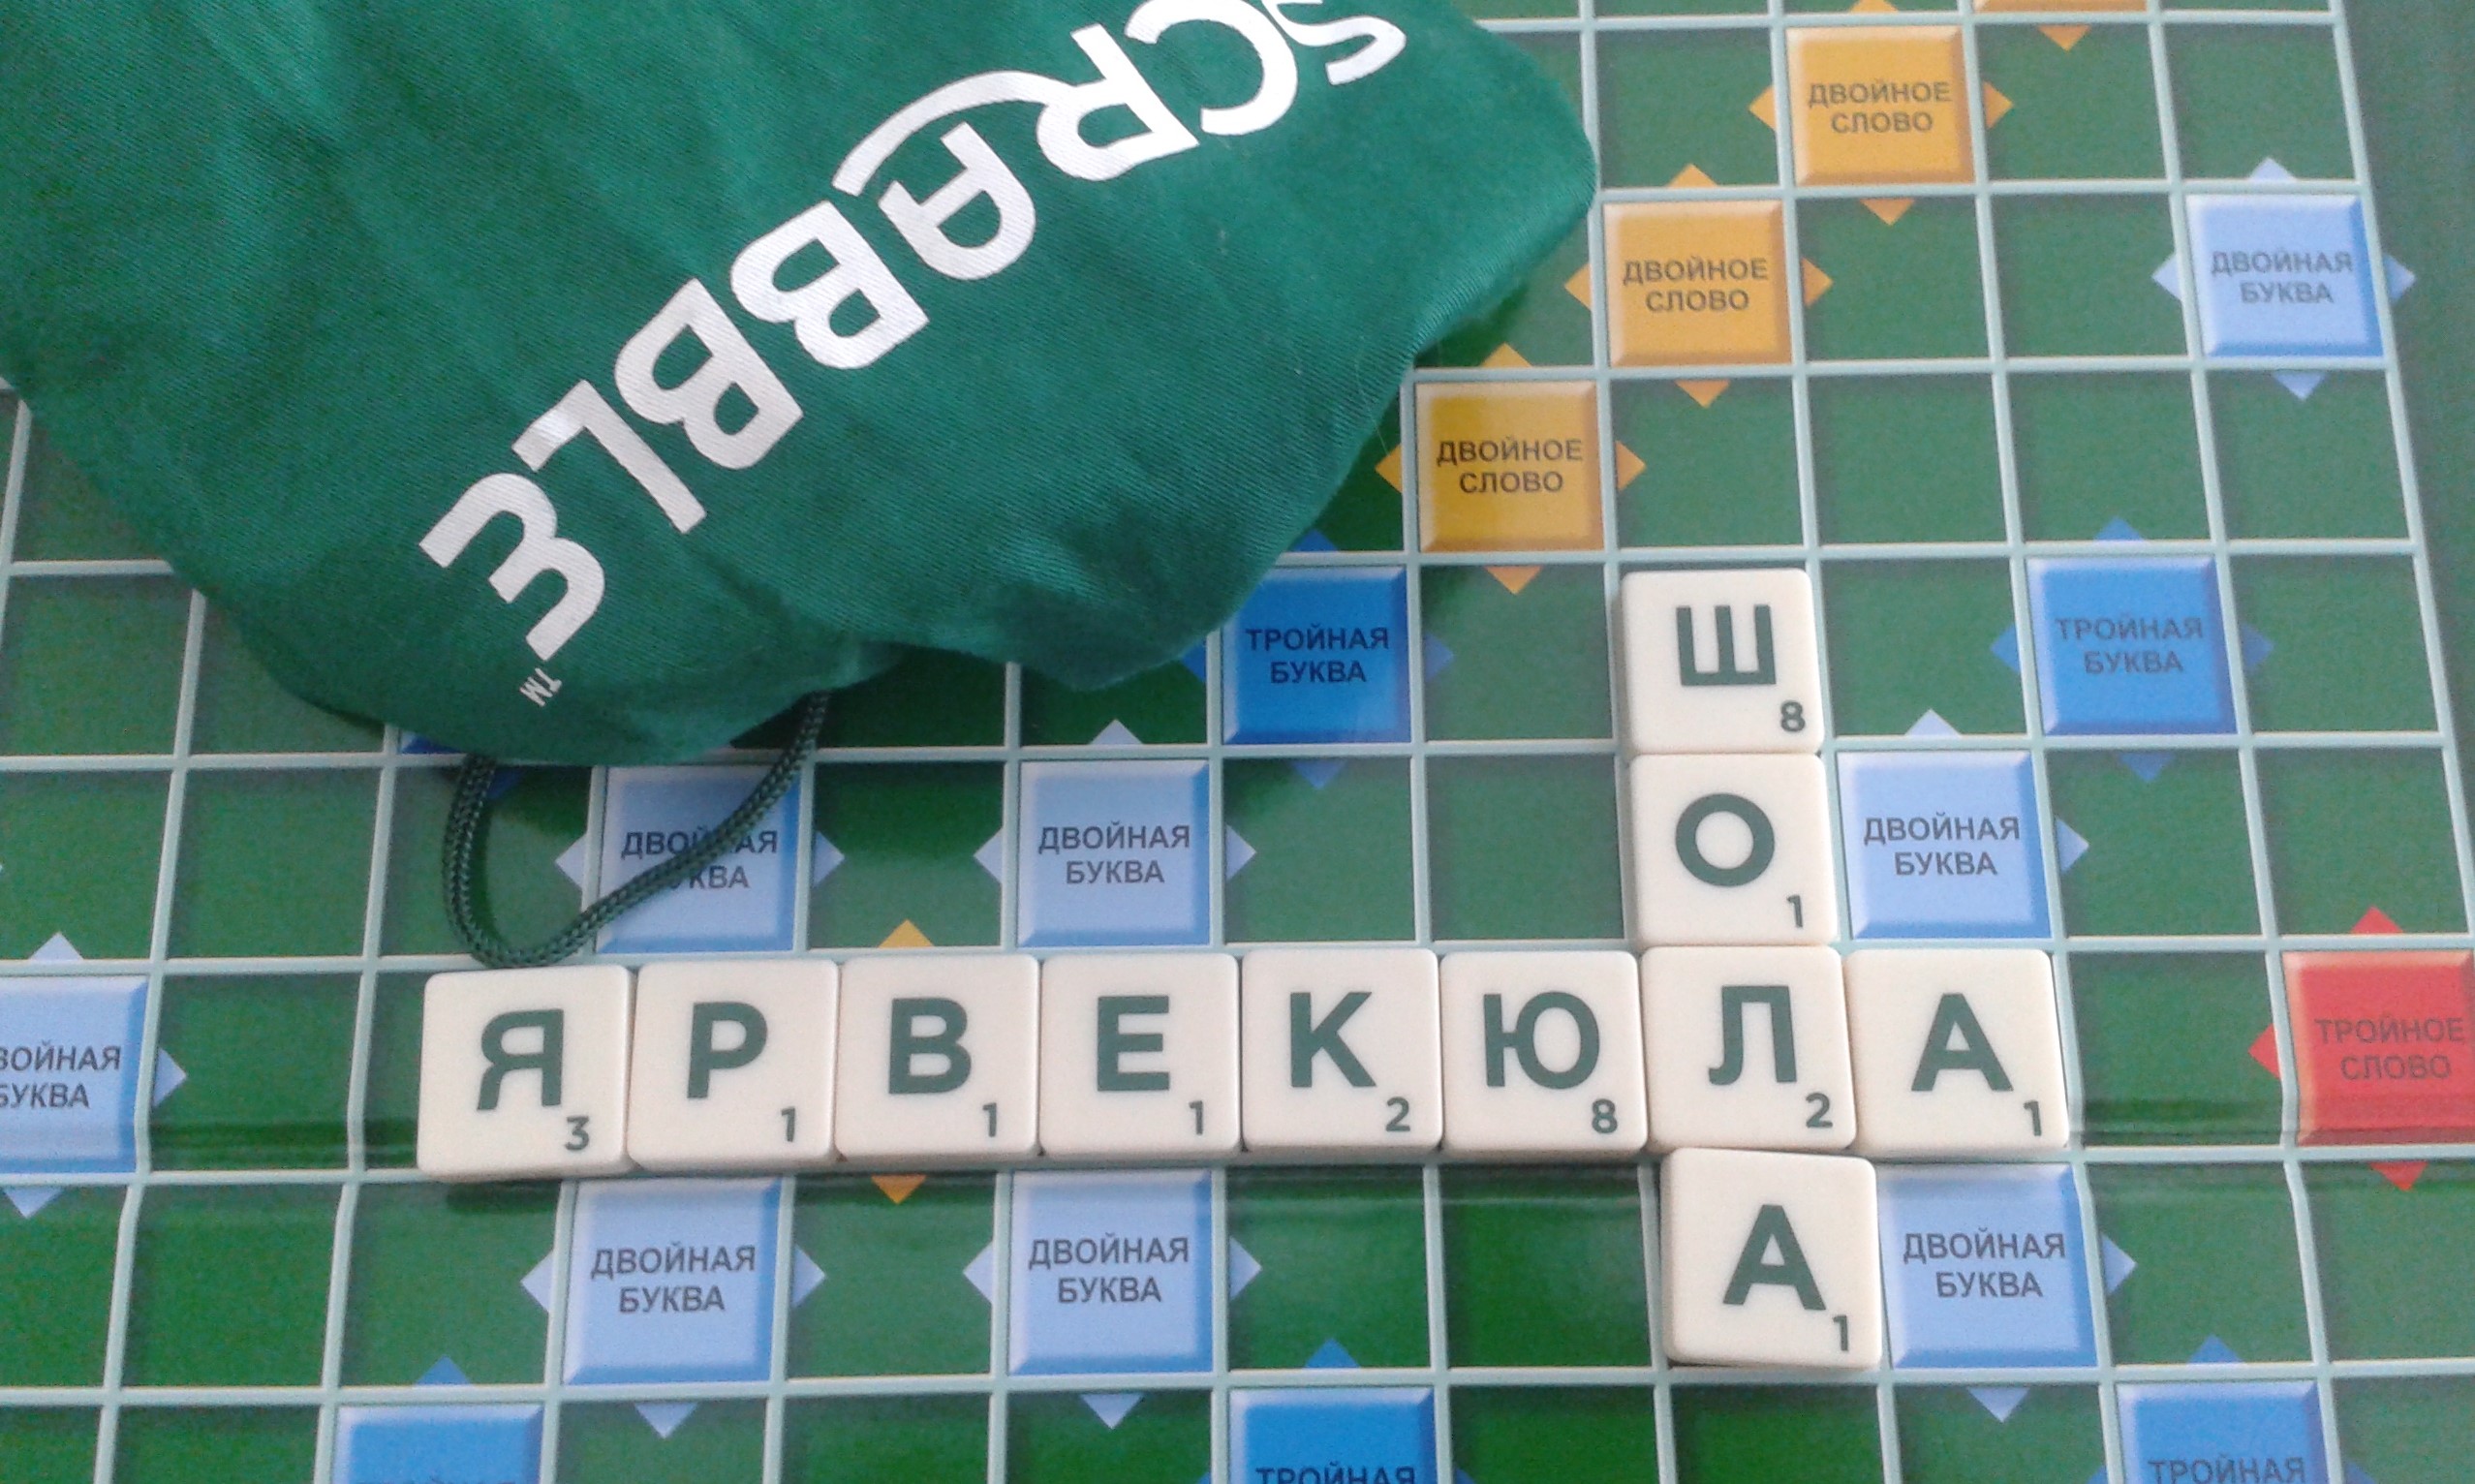 Osalesime mängu “Scrabble” võistlusel